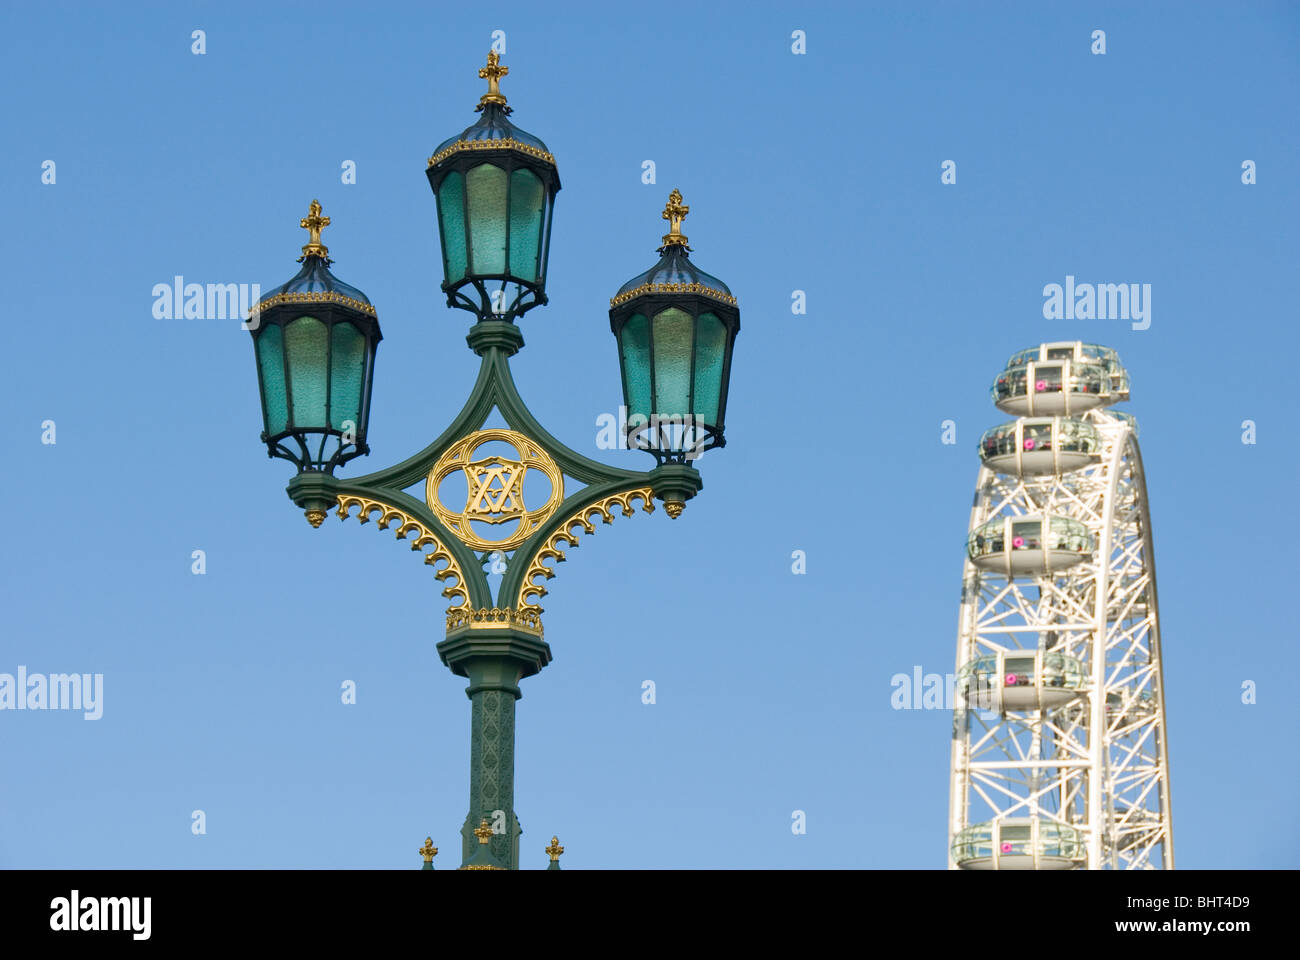 La vecchia strada lampada e il London Eye Millennium Wheel, ruota panoramica Ferris, London, England, Regno Unito, Europa Foto Stock